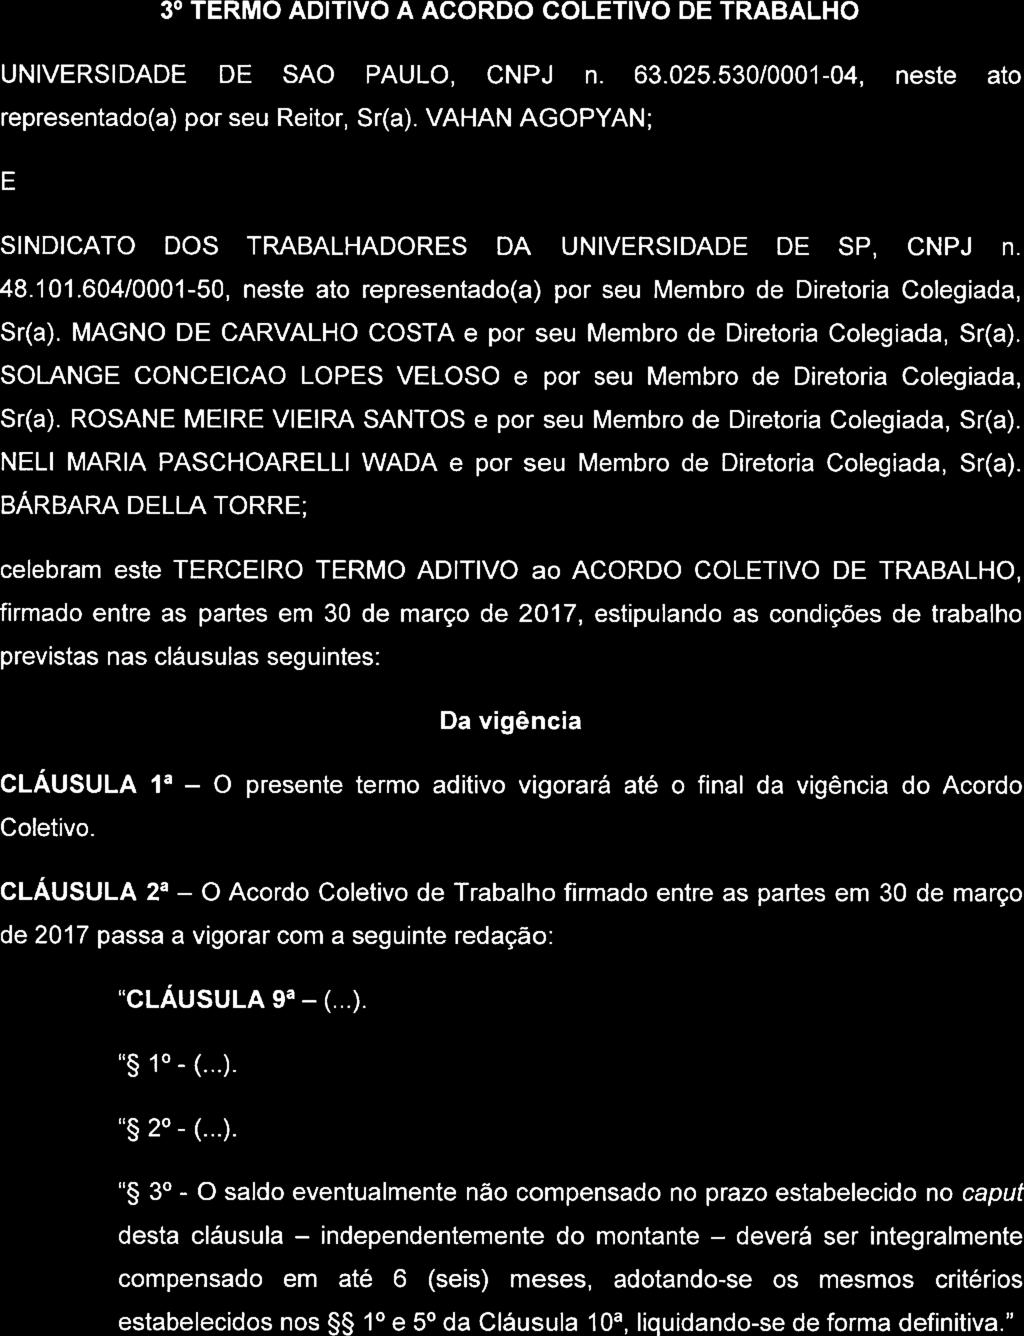 3' TERMO ADITIVO A ACORDO COLETIVO DE TRABALHO UNIVERSIDADE DE SAO PAULO. CNPJ n. 63.025.530/0001-04, neste ato representado(a) por seu Reitor, Sr(a).